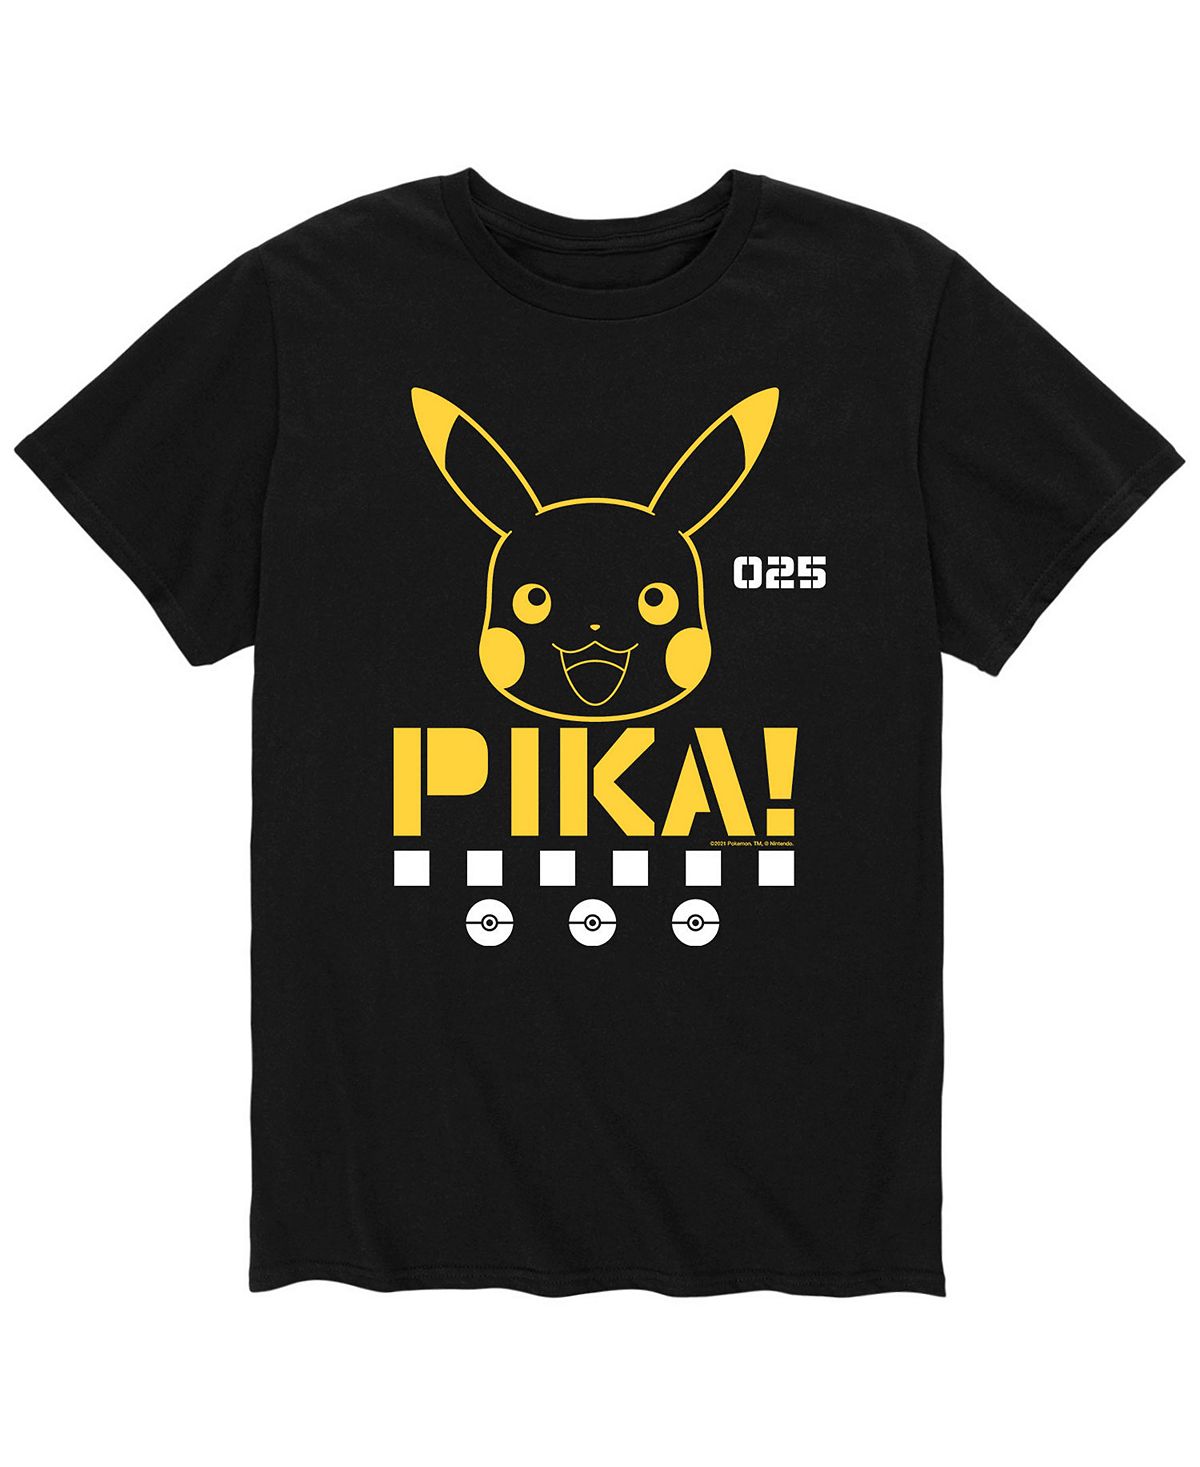 Мужская футболка pokemon pika AIRWAVES, черный набор pokemon футболка jigglypuff sing женская белая l стикерпак pika 2